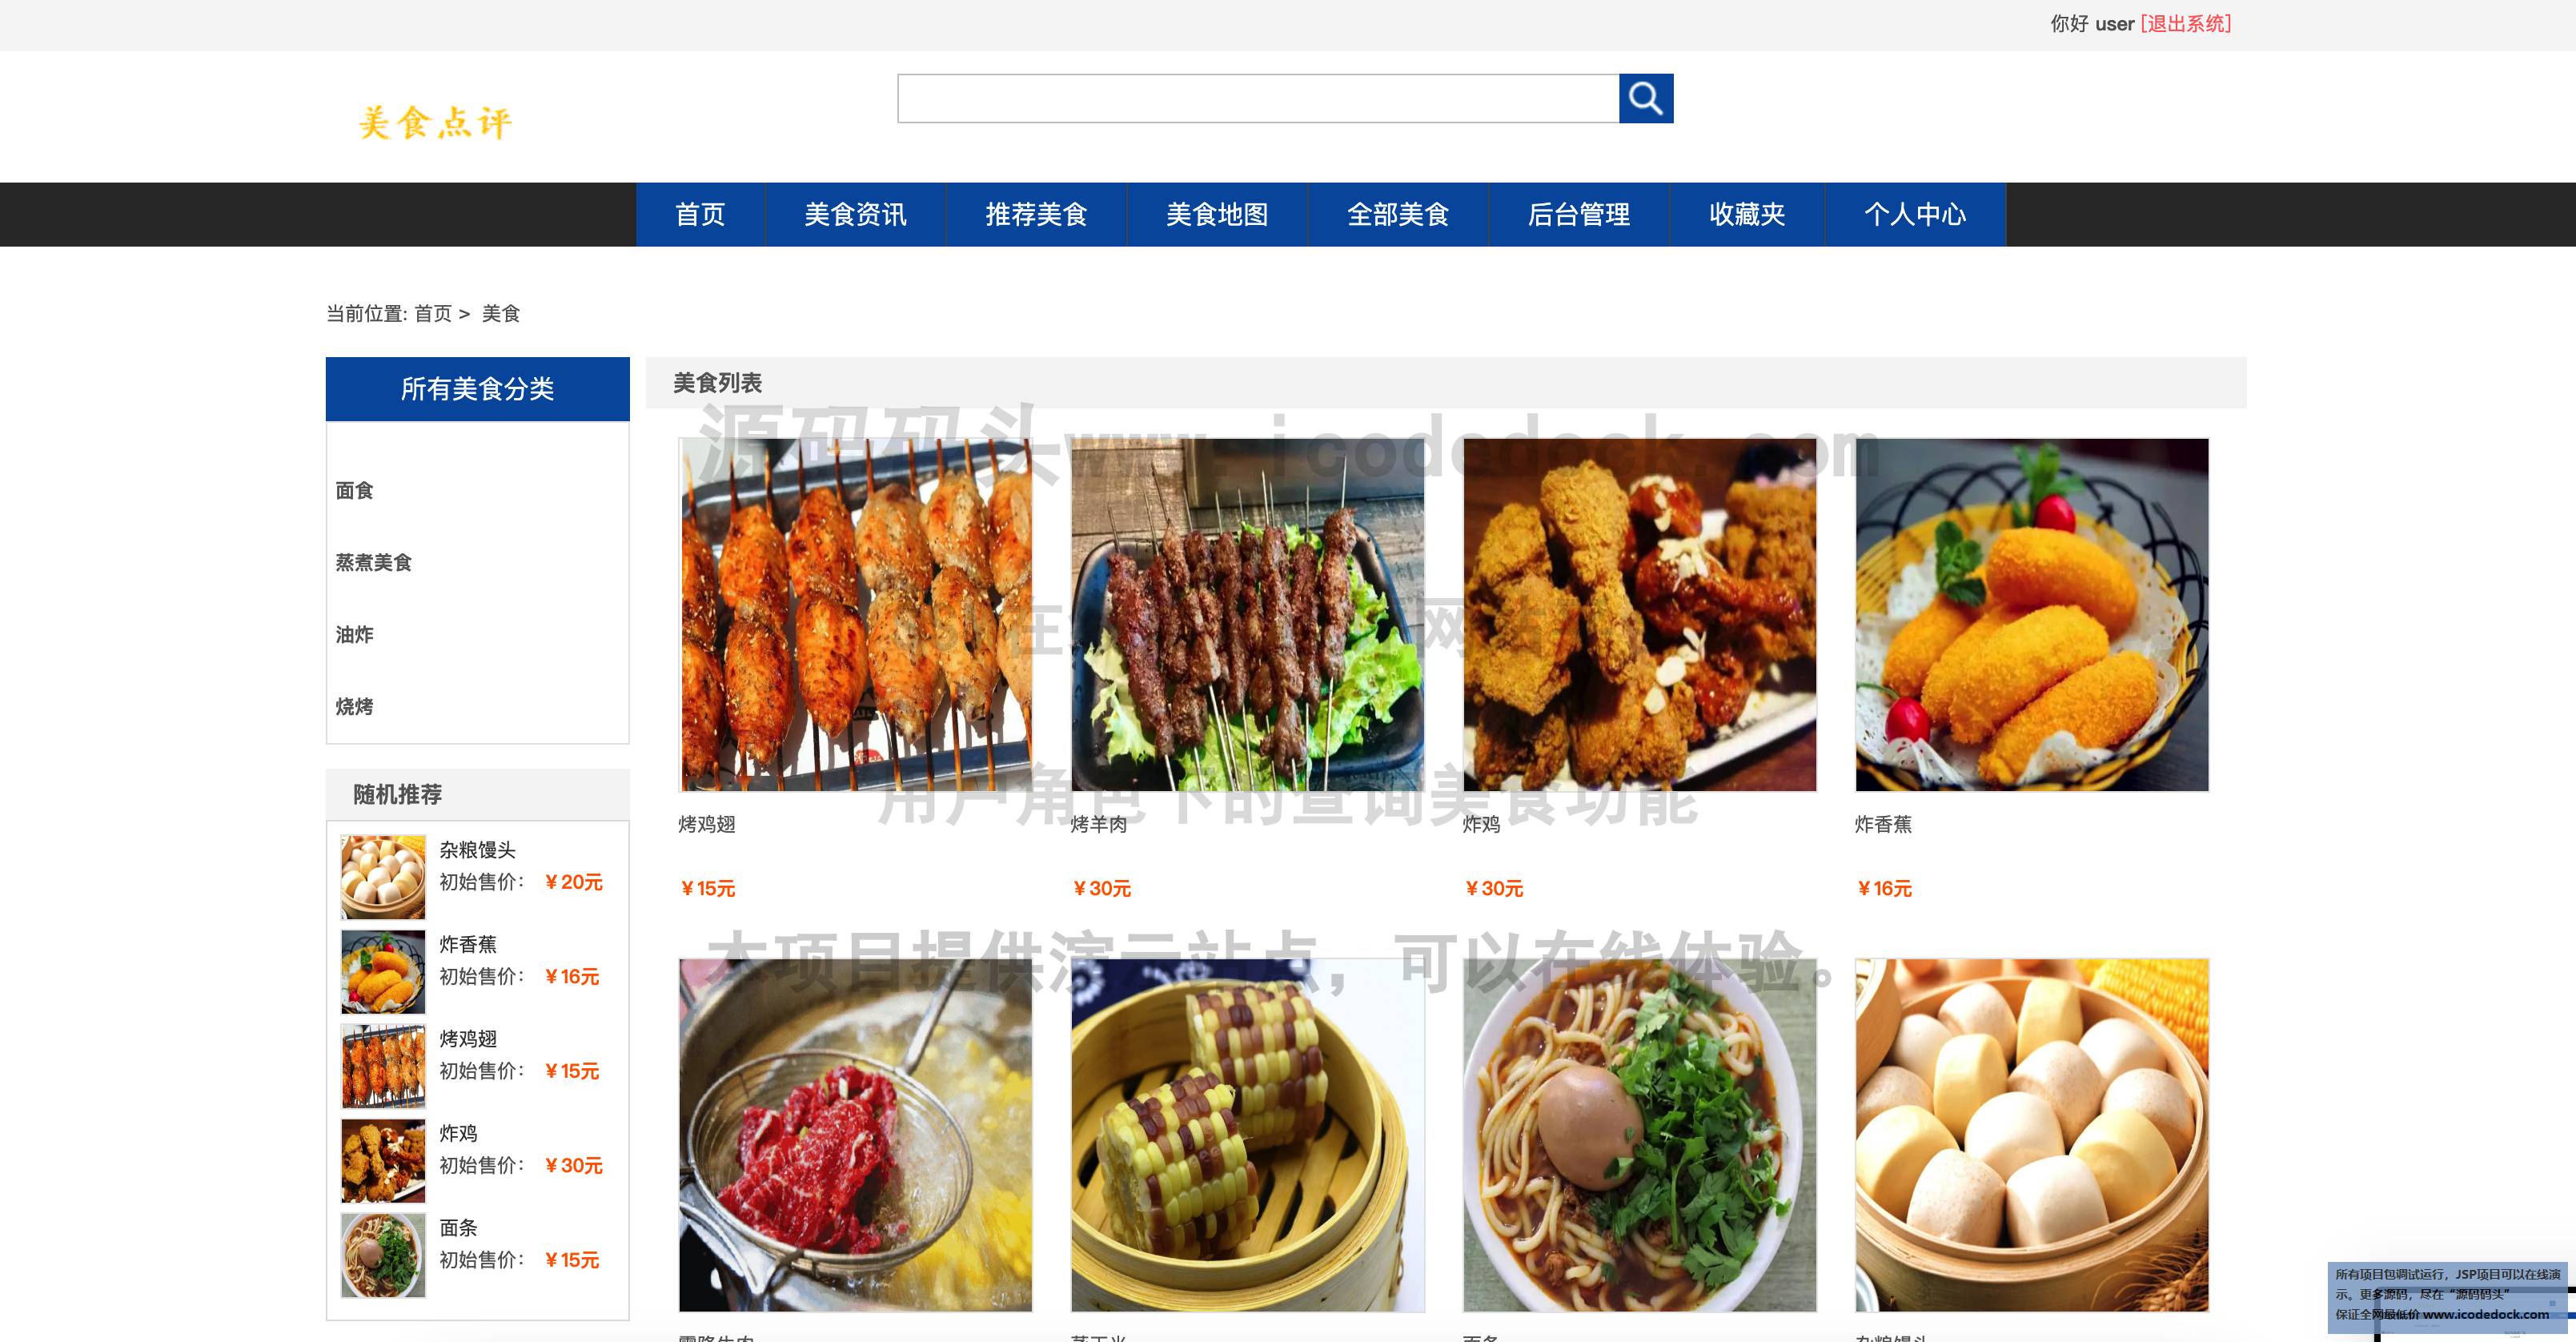 SSM在线美食点评网站平台-用户角色-查询美食